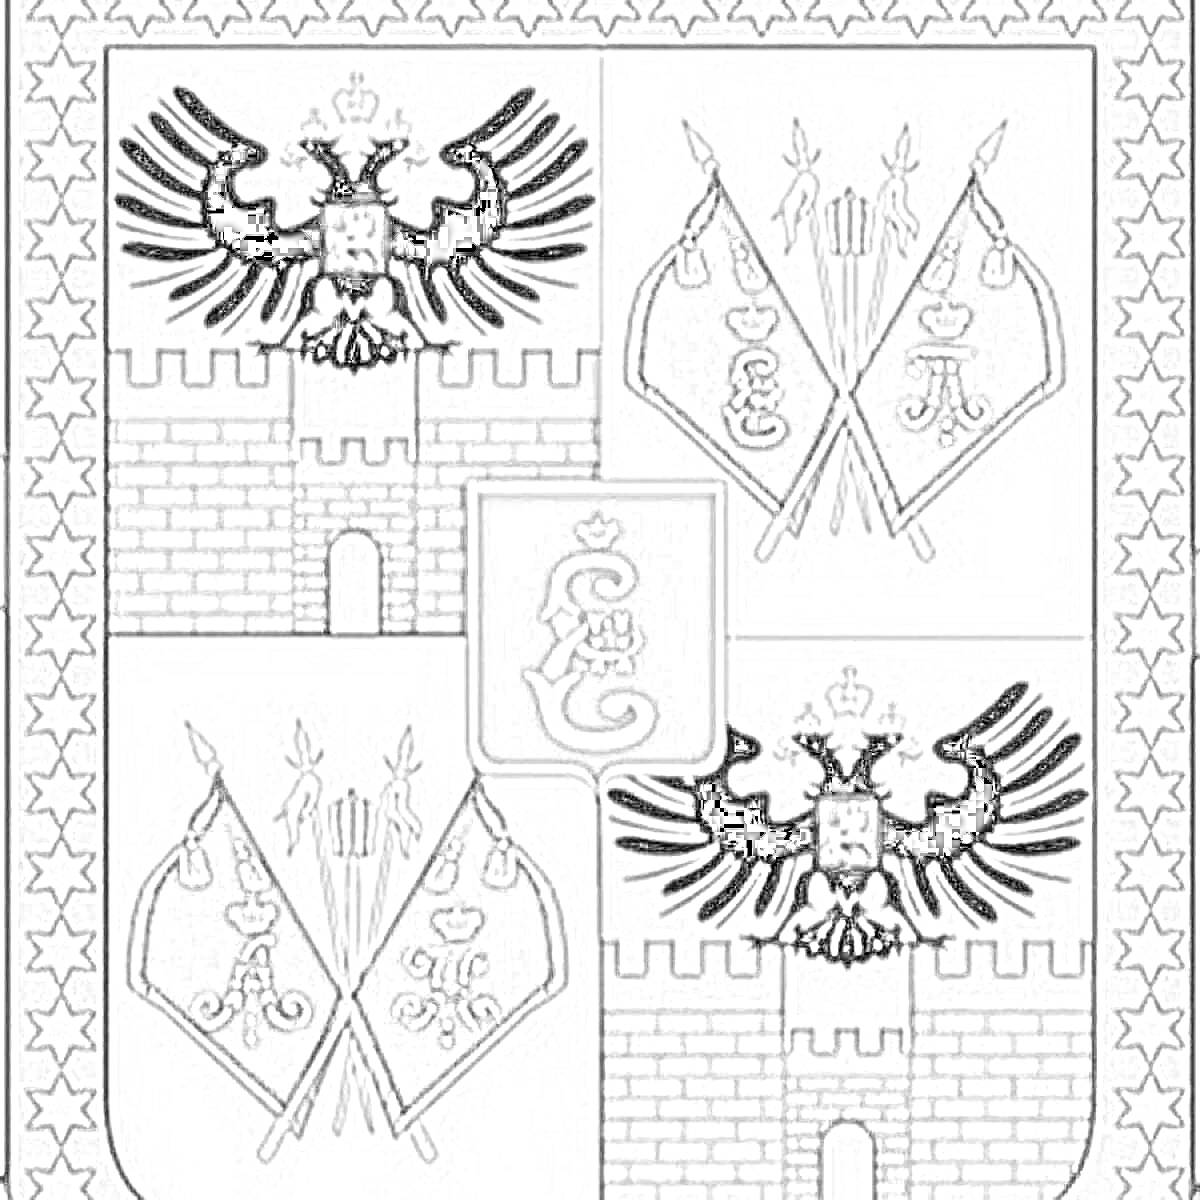 Раскраска Герб Краснодара с изображением двуглавого орла, флагов и копий на фоне крепостной стены, украшенной звездами.